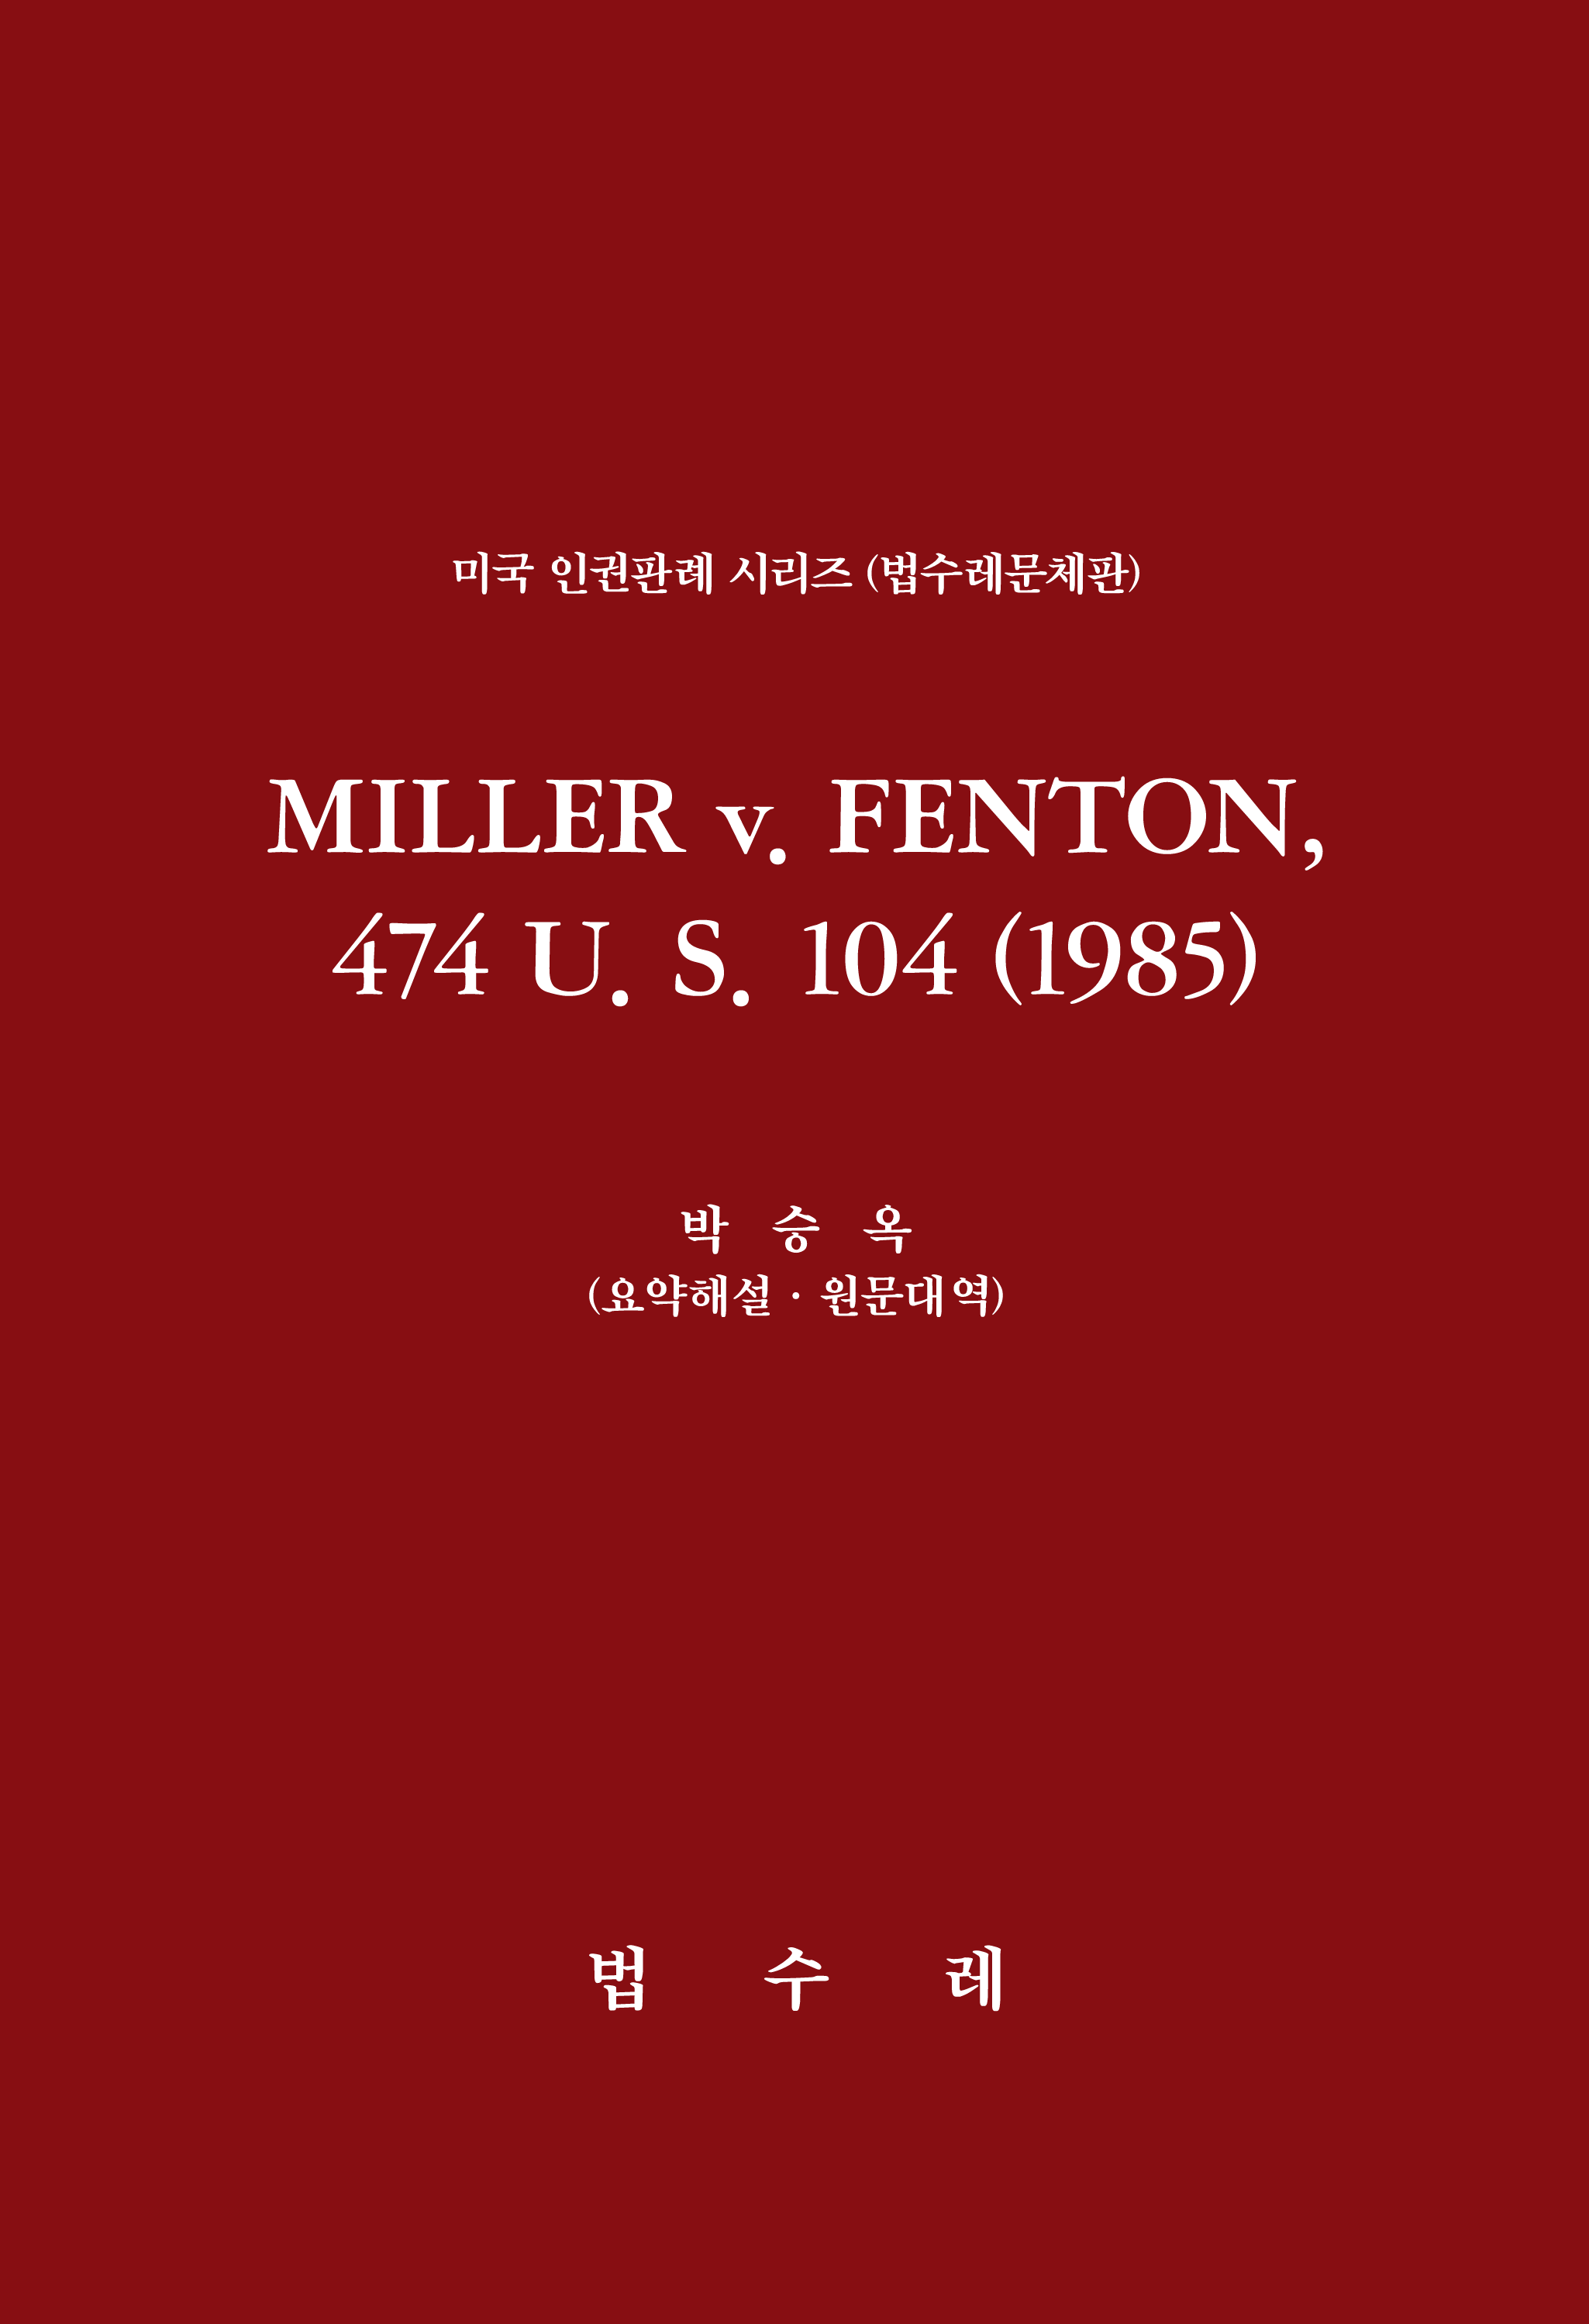 MILLER v. FENTON, 474 U. S. 104 (1985)